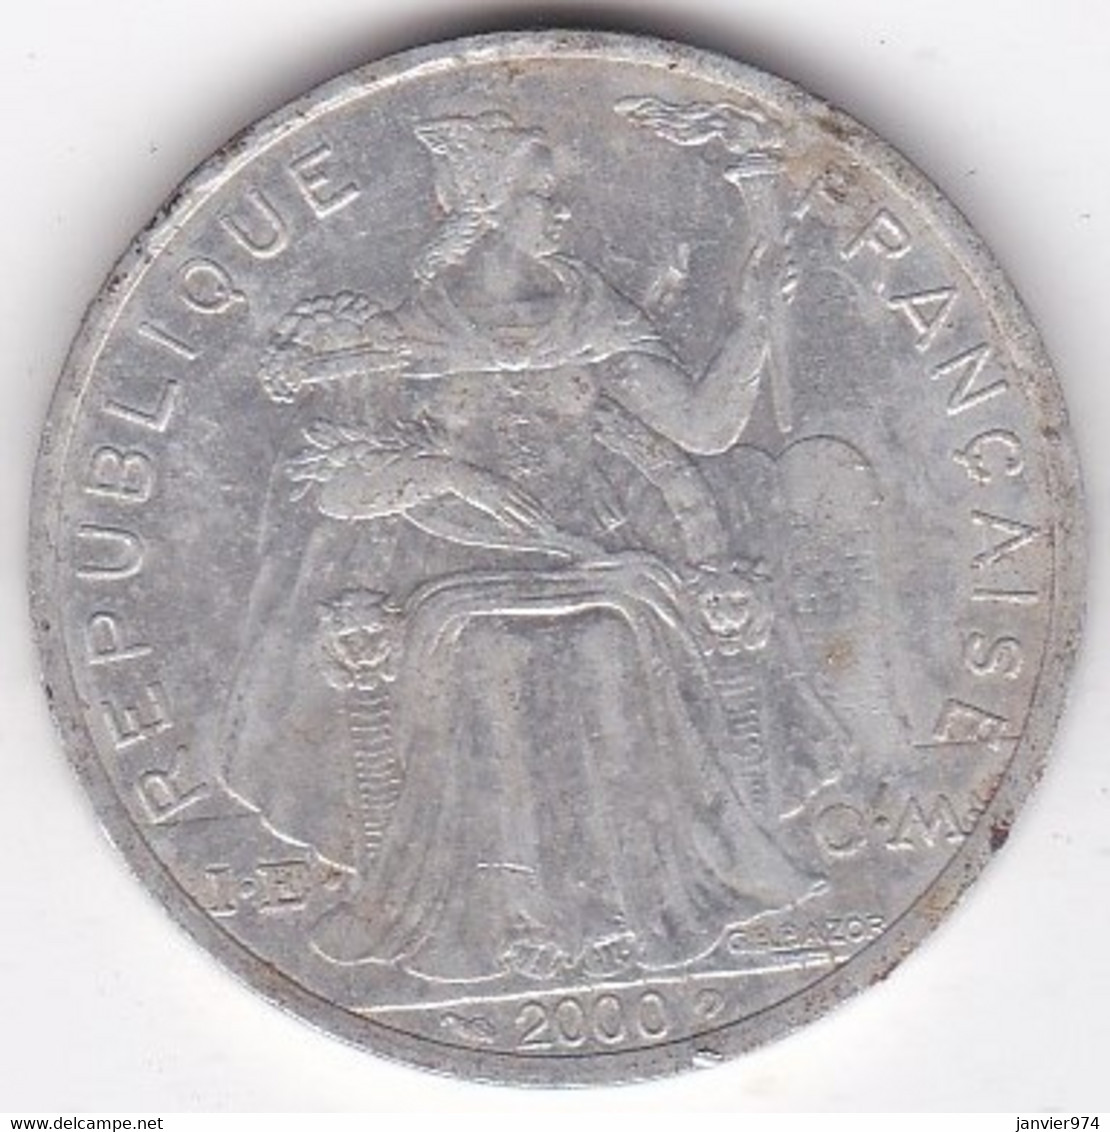 Polynésie Française . 5 Francs 2000, En Aluminium - French Polynesia